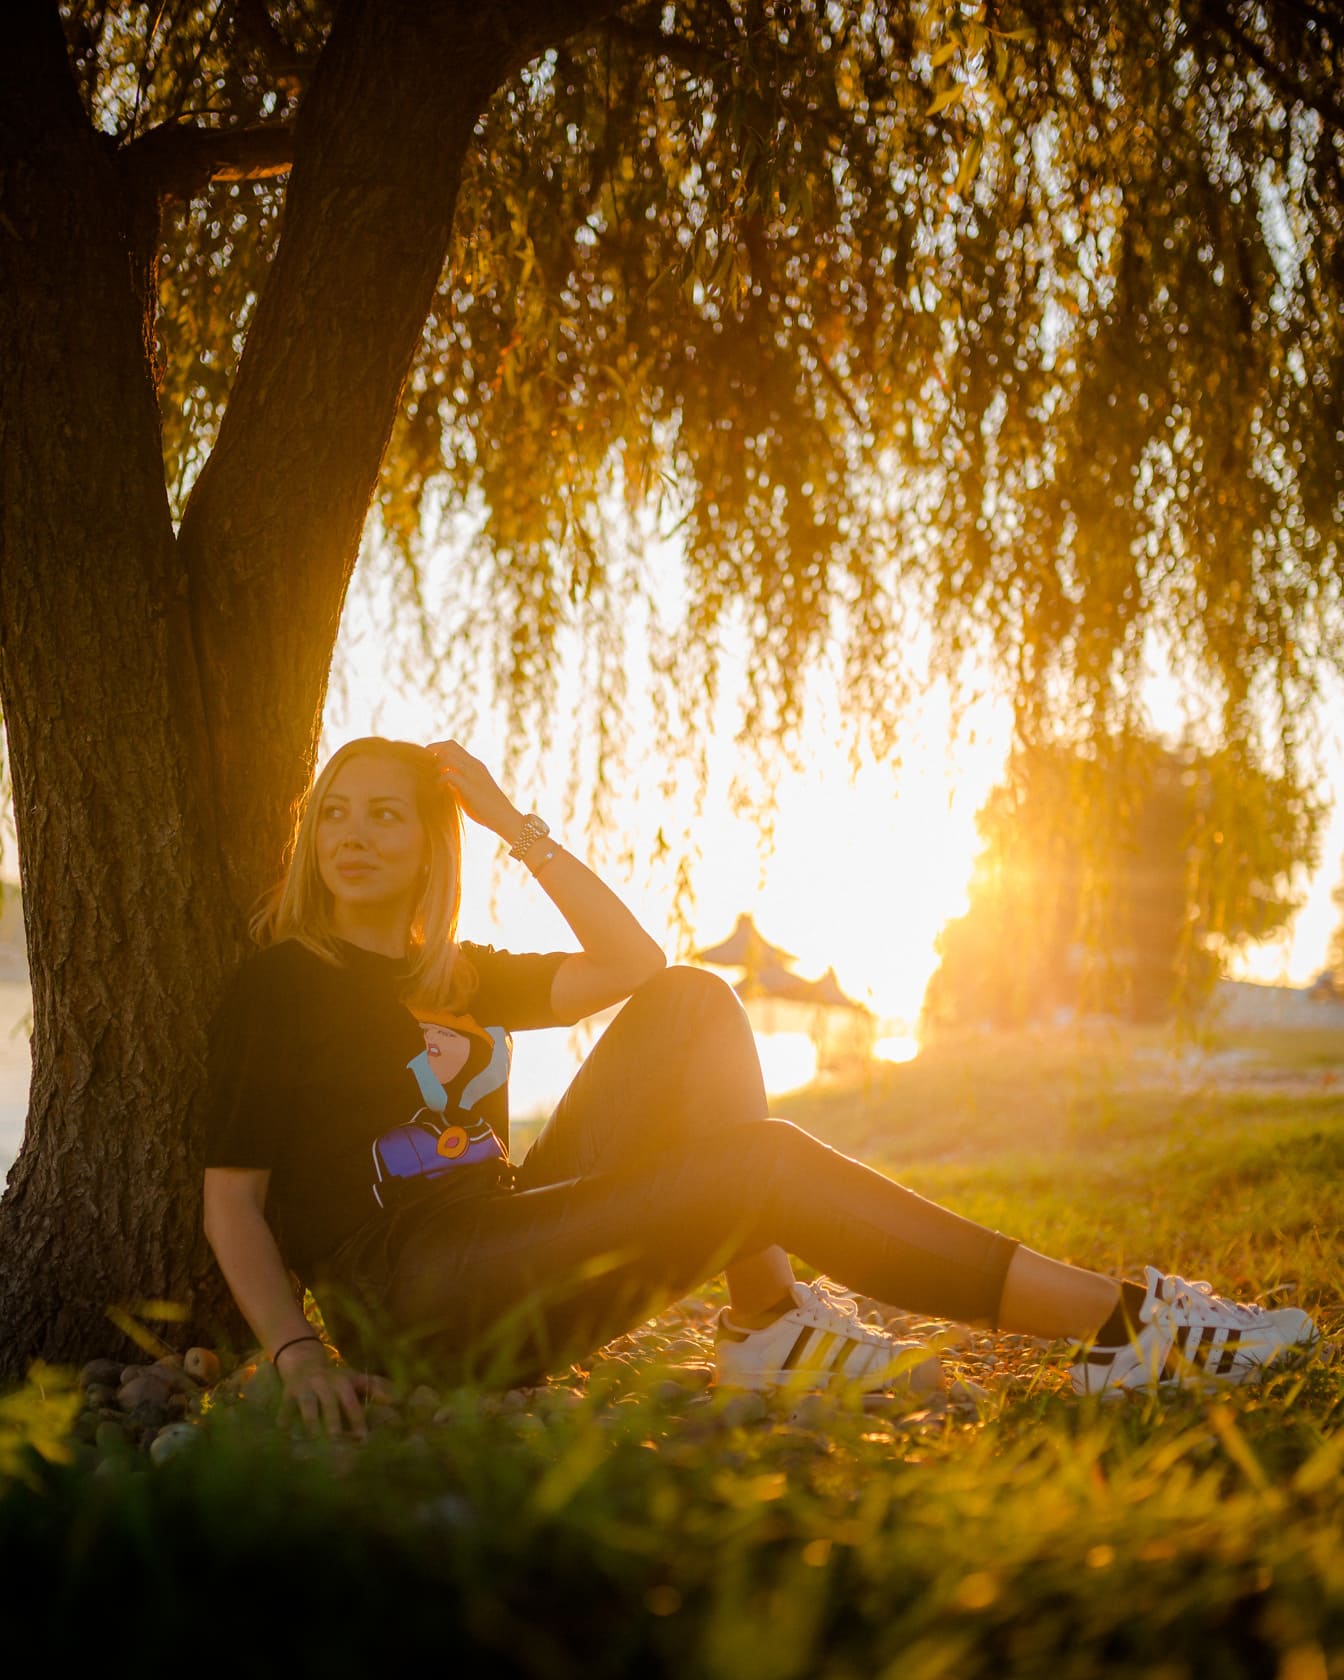 Bonita adolescente sentada debajo del árbol en la puesta del sol con rayos de sol en el fondo